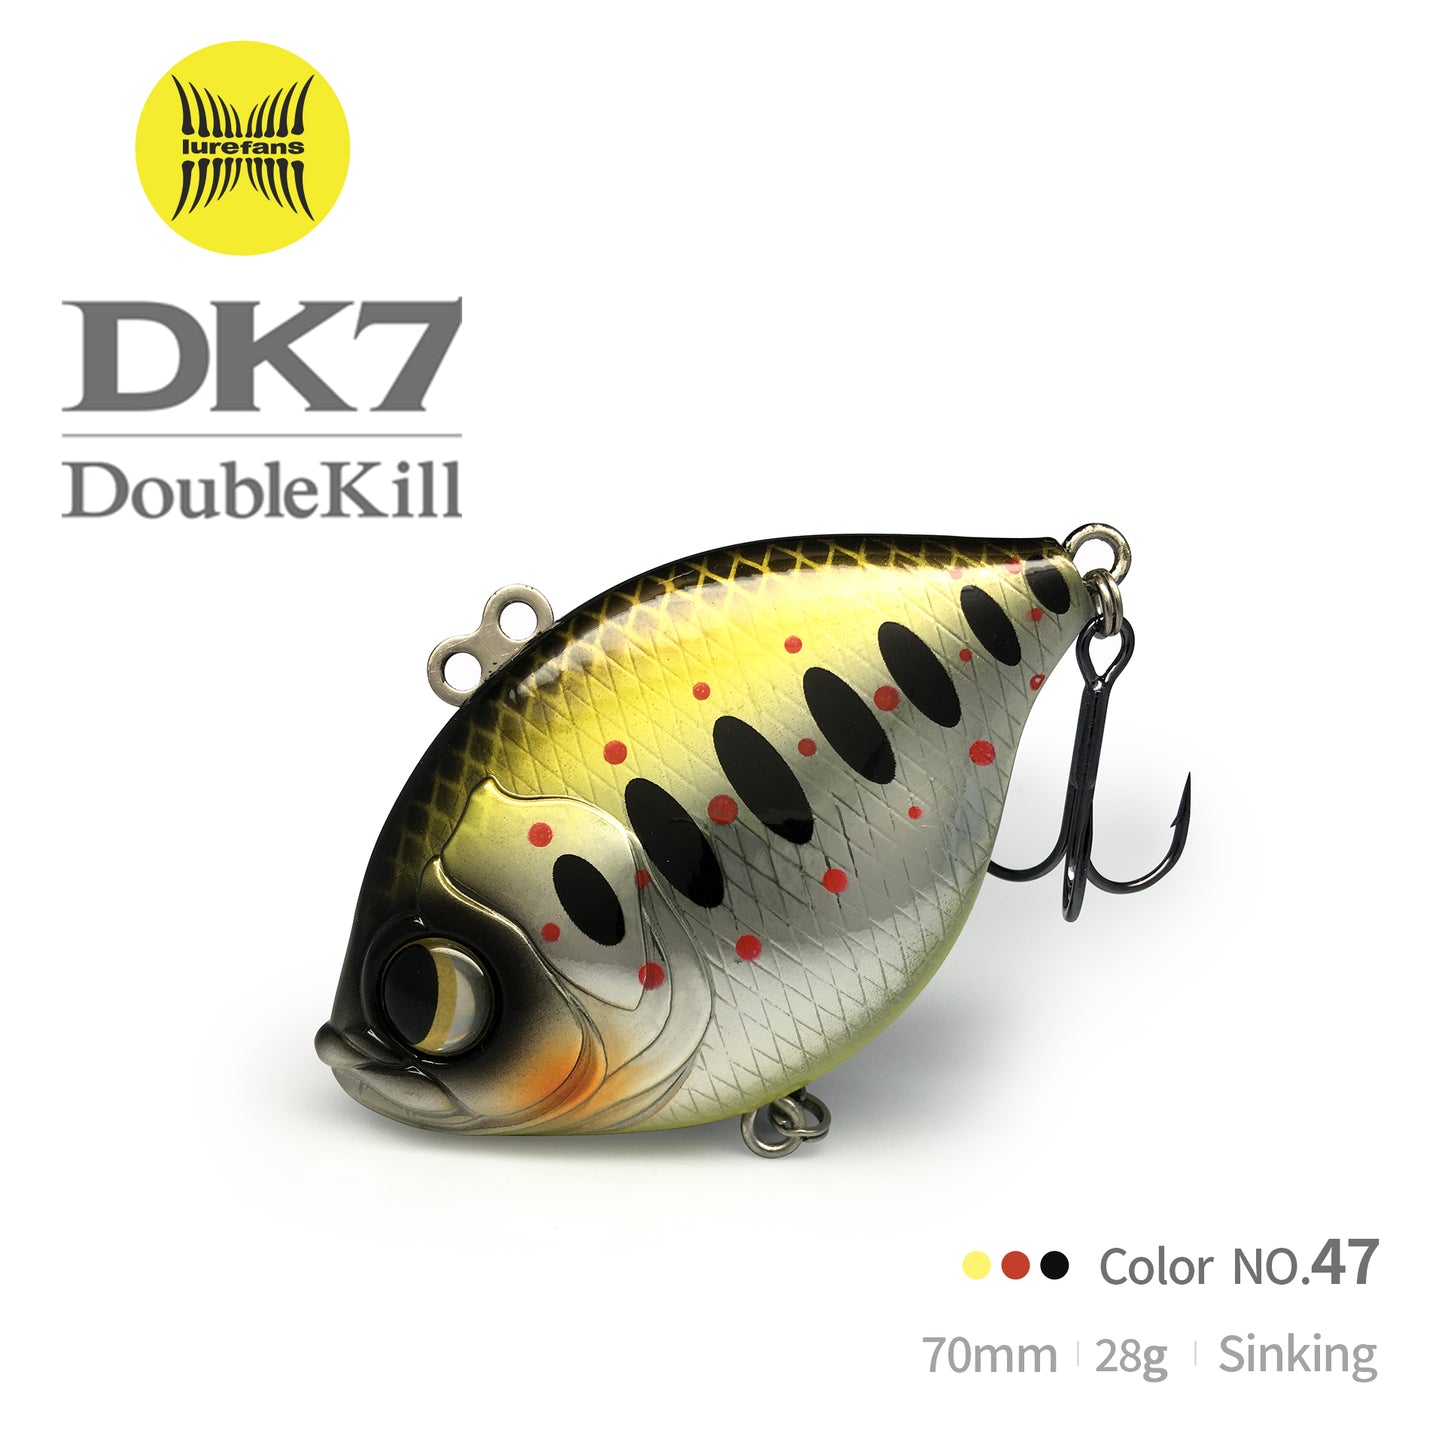 DK7